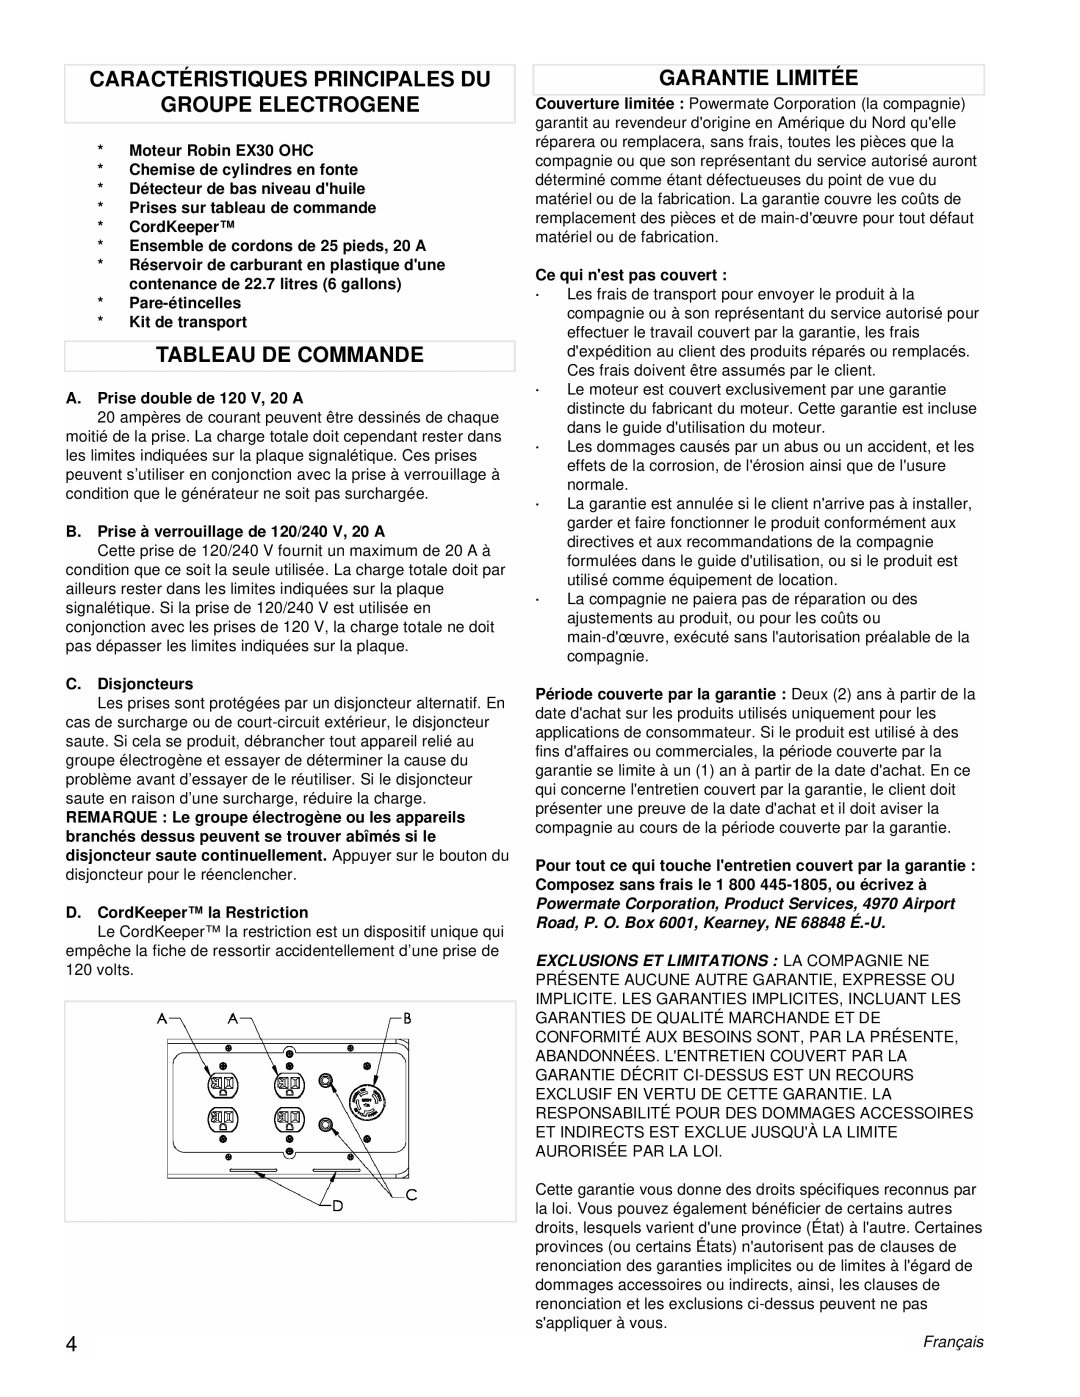 Powermate PM0435001 Caractéristiques Principales Du, Groupe Electrogene, Tableau De Commande, Garantie Limitée, Français 